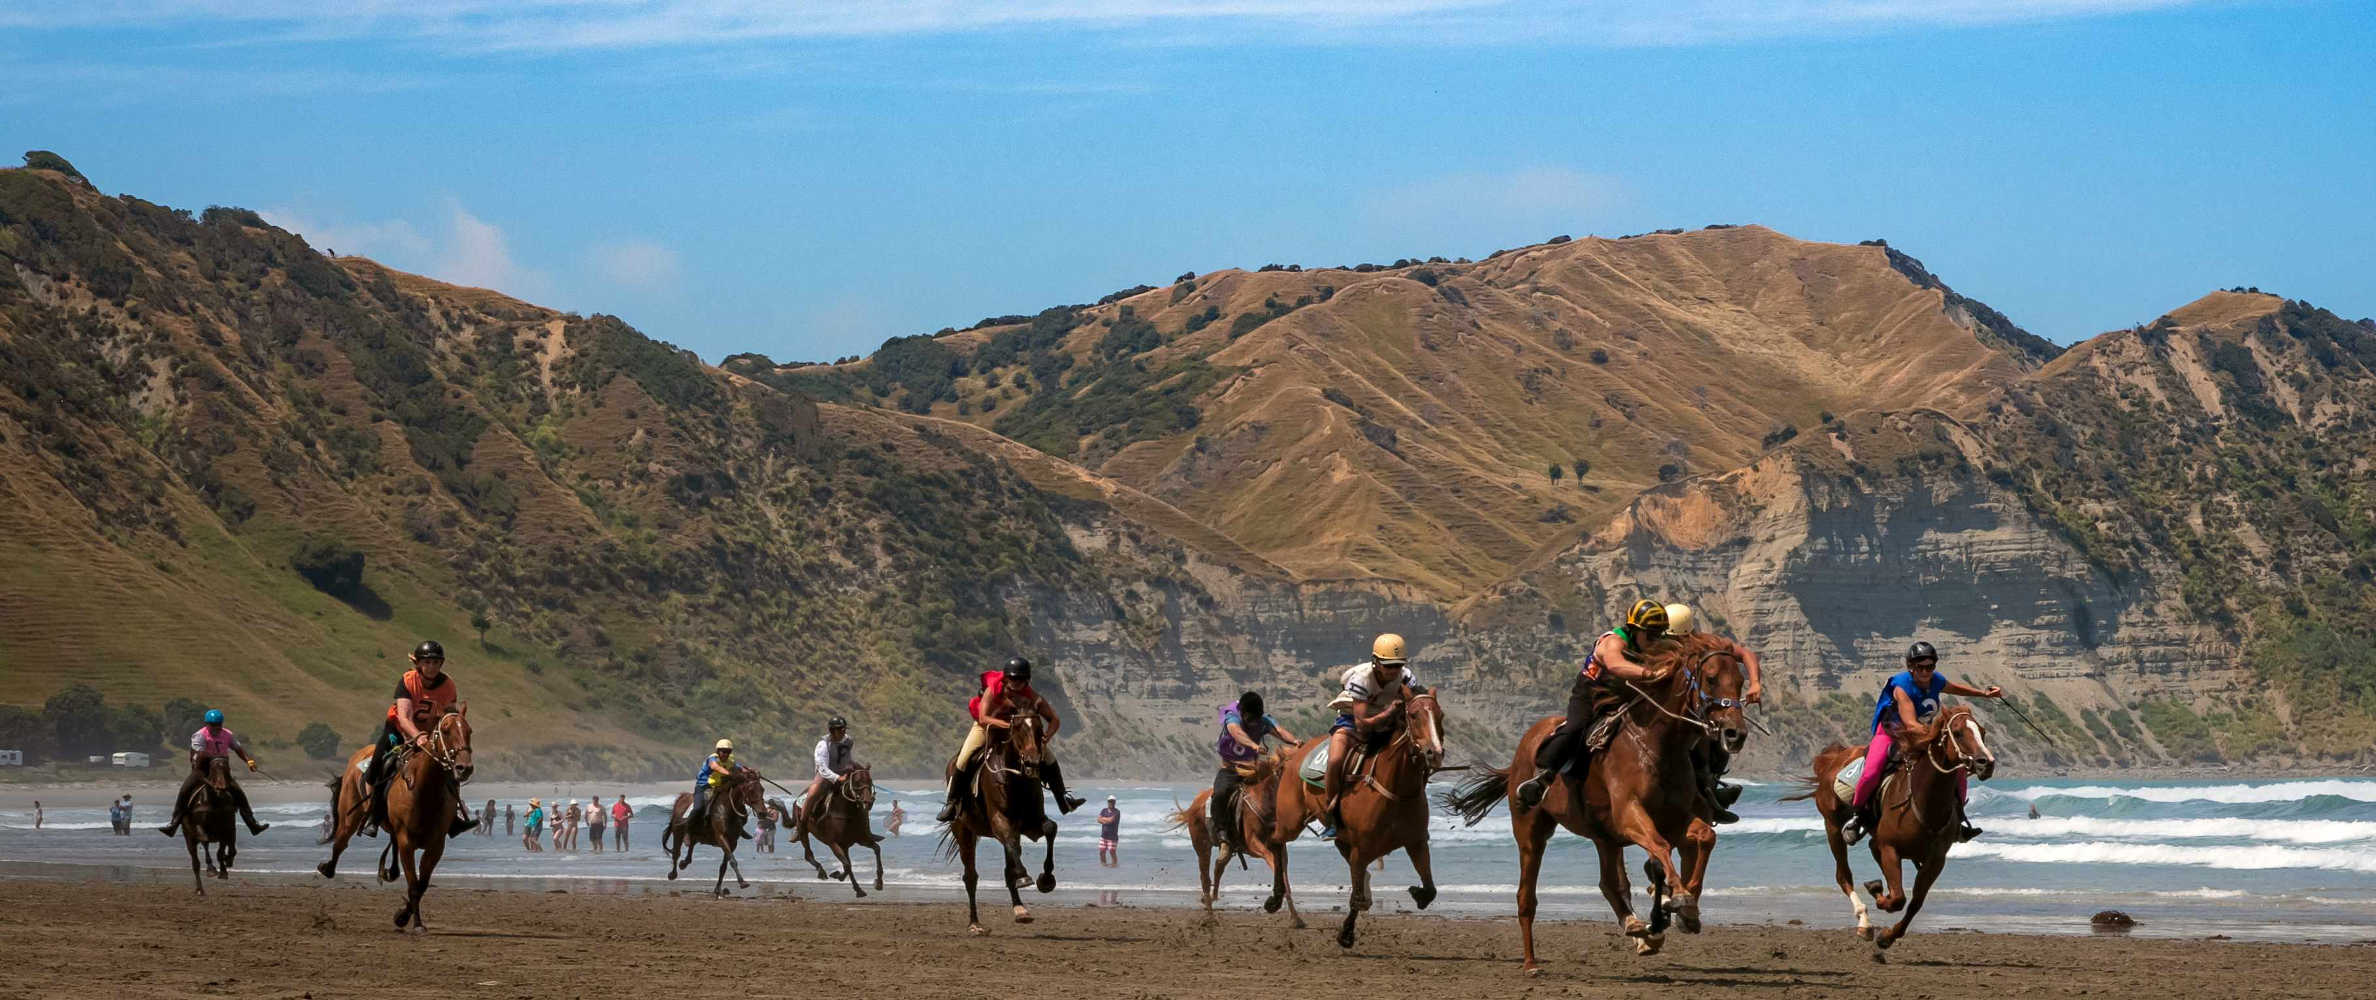 KAIAUA BEACH Annual summer beach horse racing event Tolaga Bay, New Zealand